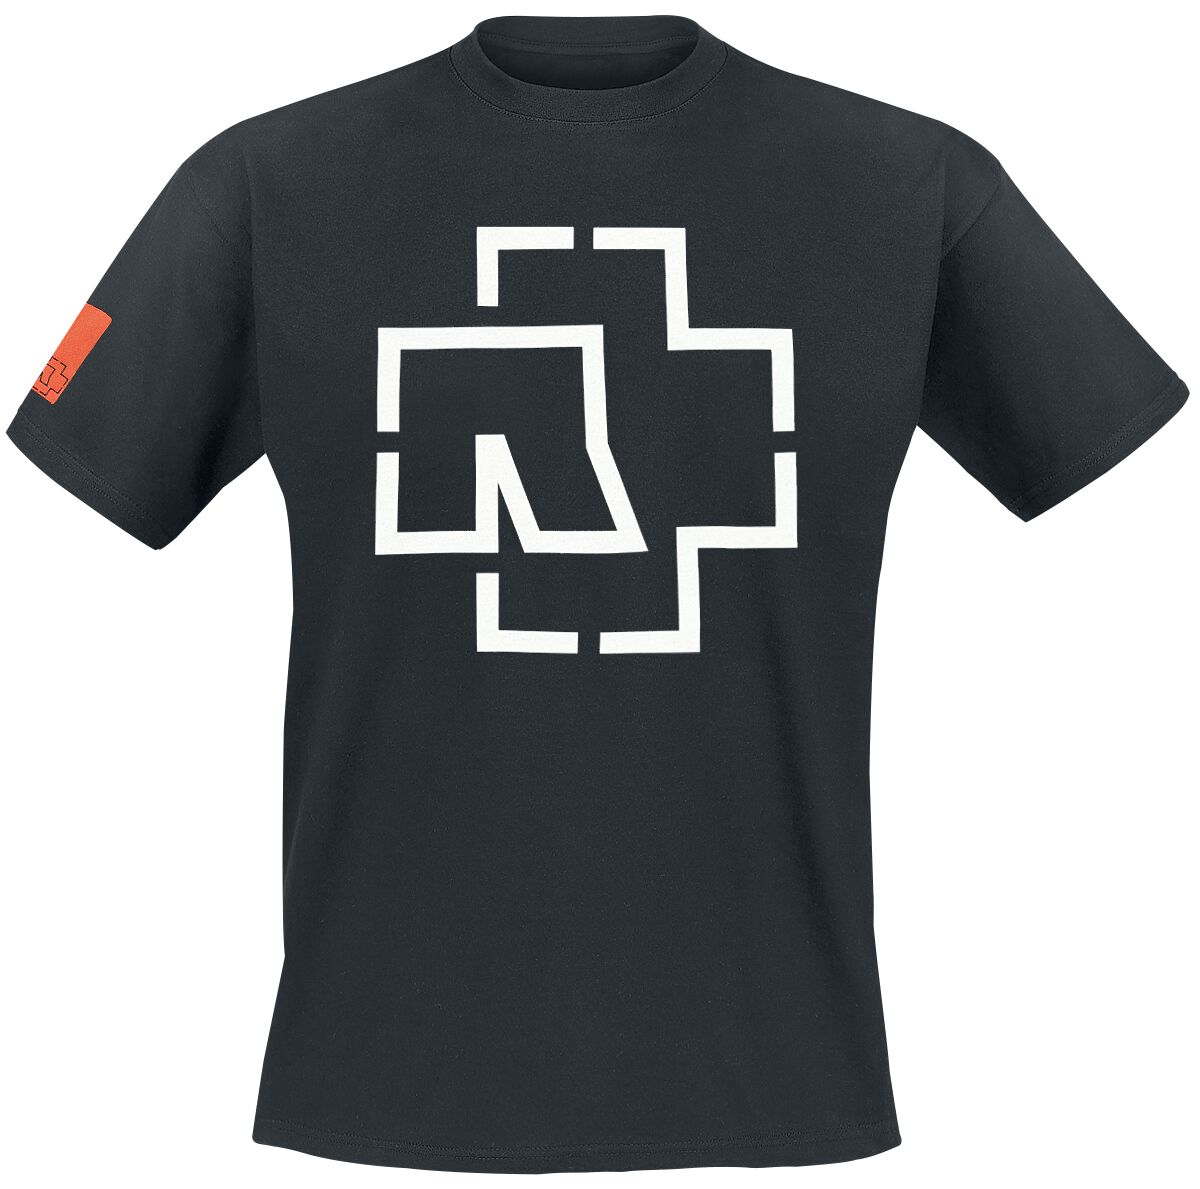 Rammstein T-Shirt - Logo - S bis 3XL - für Männer - Größe XXL - schwarz  - Lizenziertes Merchandise!